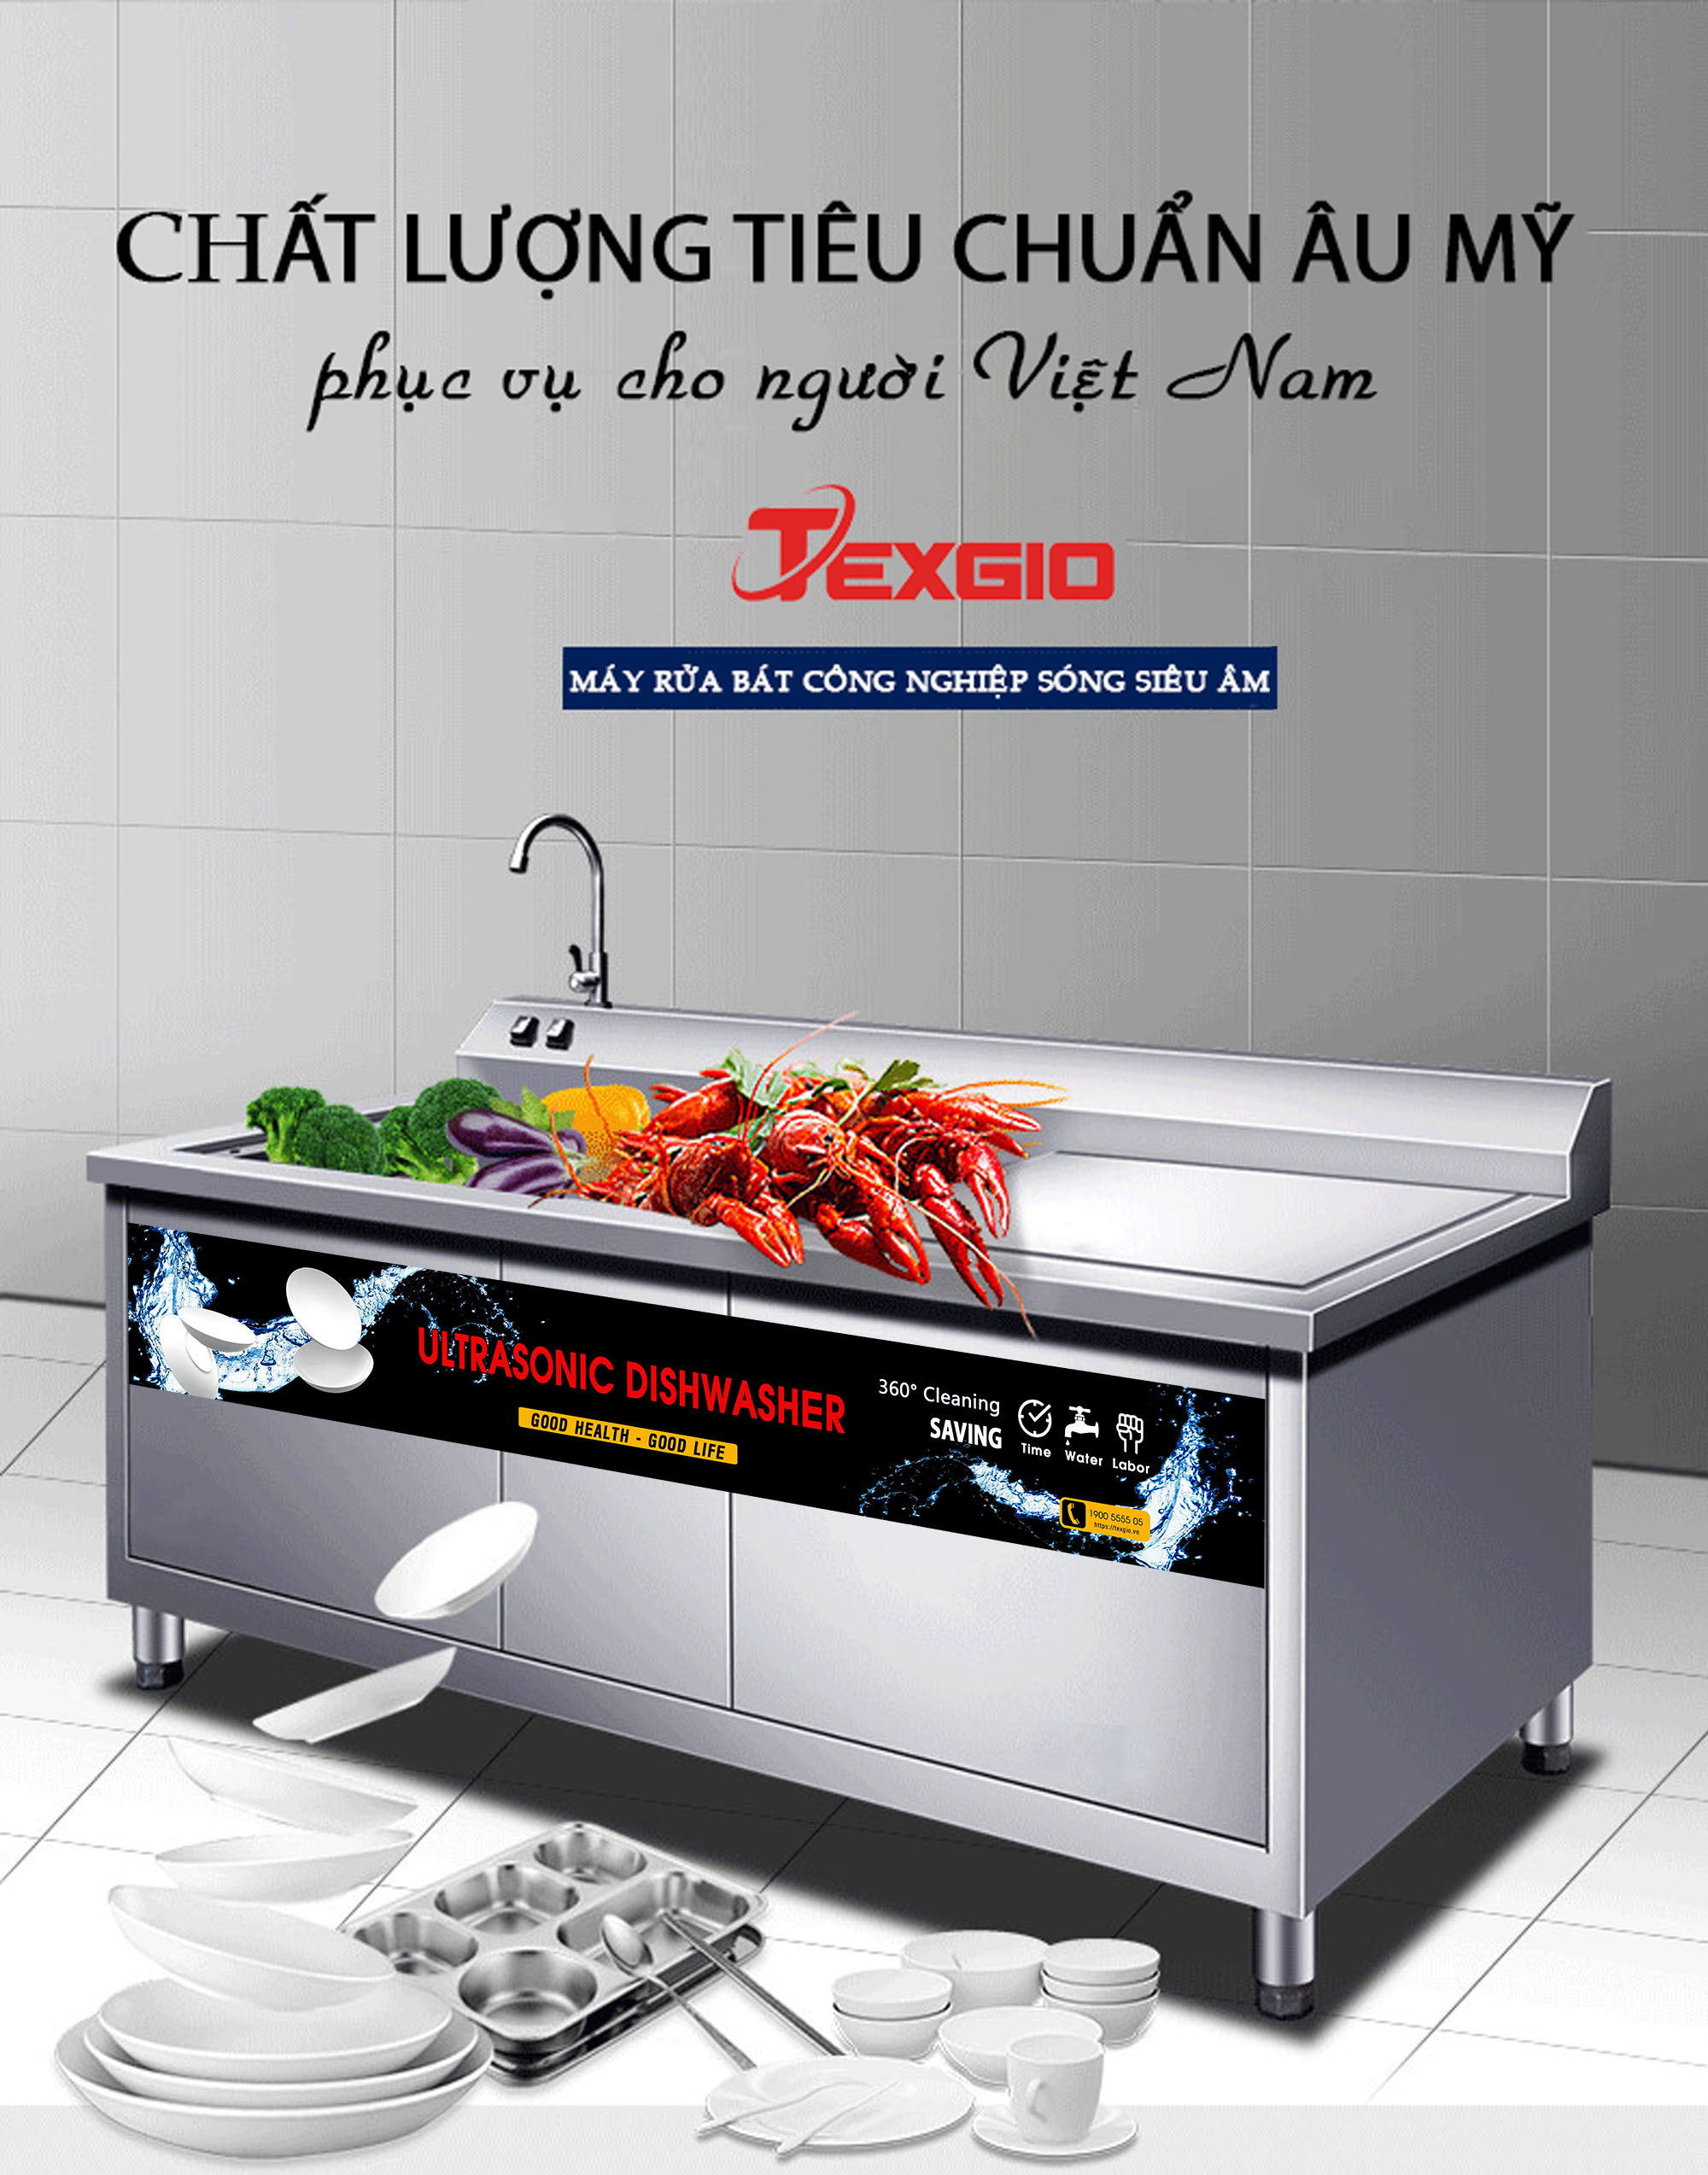 clc 1 - Máy Công Nghiệp UltraSonic Texgio Luxury TGU-2400HD